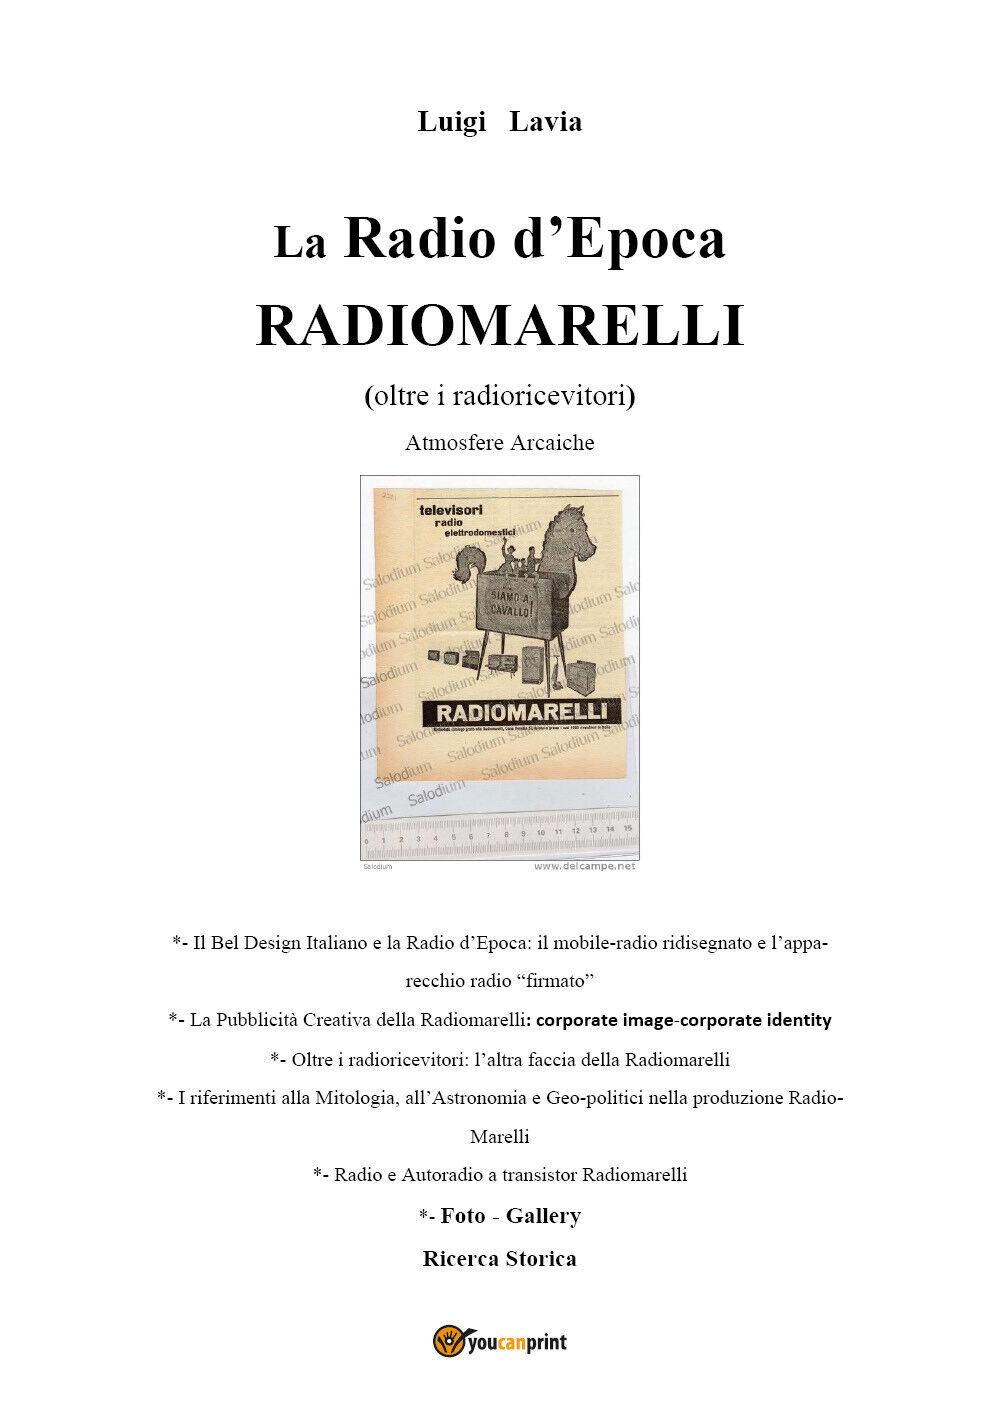 La Radio d'Epoca - Radiomarelli - Atmosfere Arcaiche libro usato